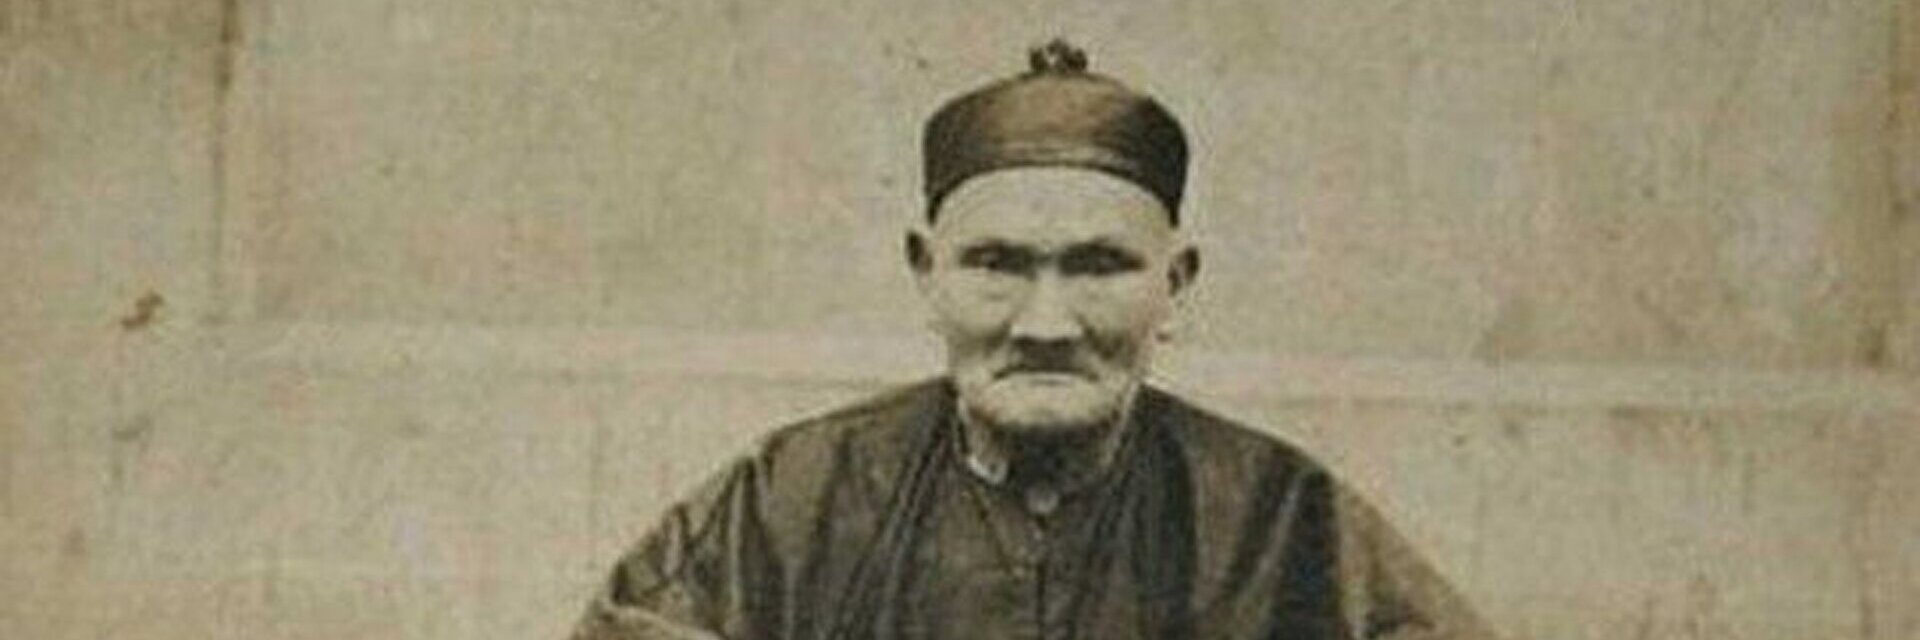 Человек проживший больше всех. Ли Цинъюнь (1677—1933). Ли Цинъюнь долгожитель. Ли Чинг-Юн долгожитель. Ли Цинъюнь 256 лет.